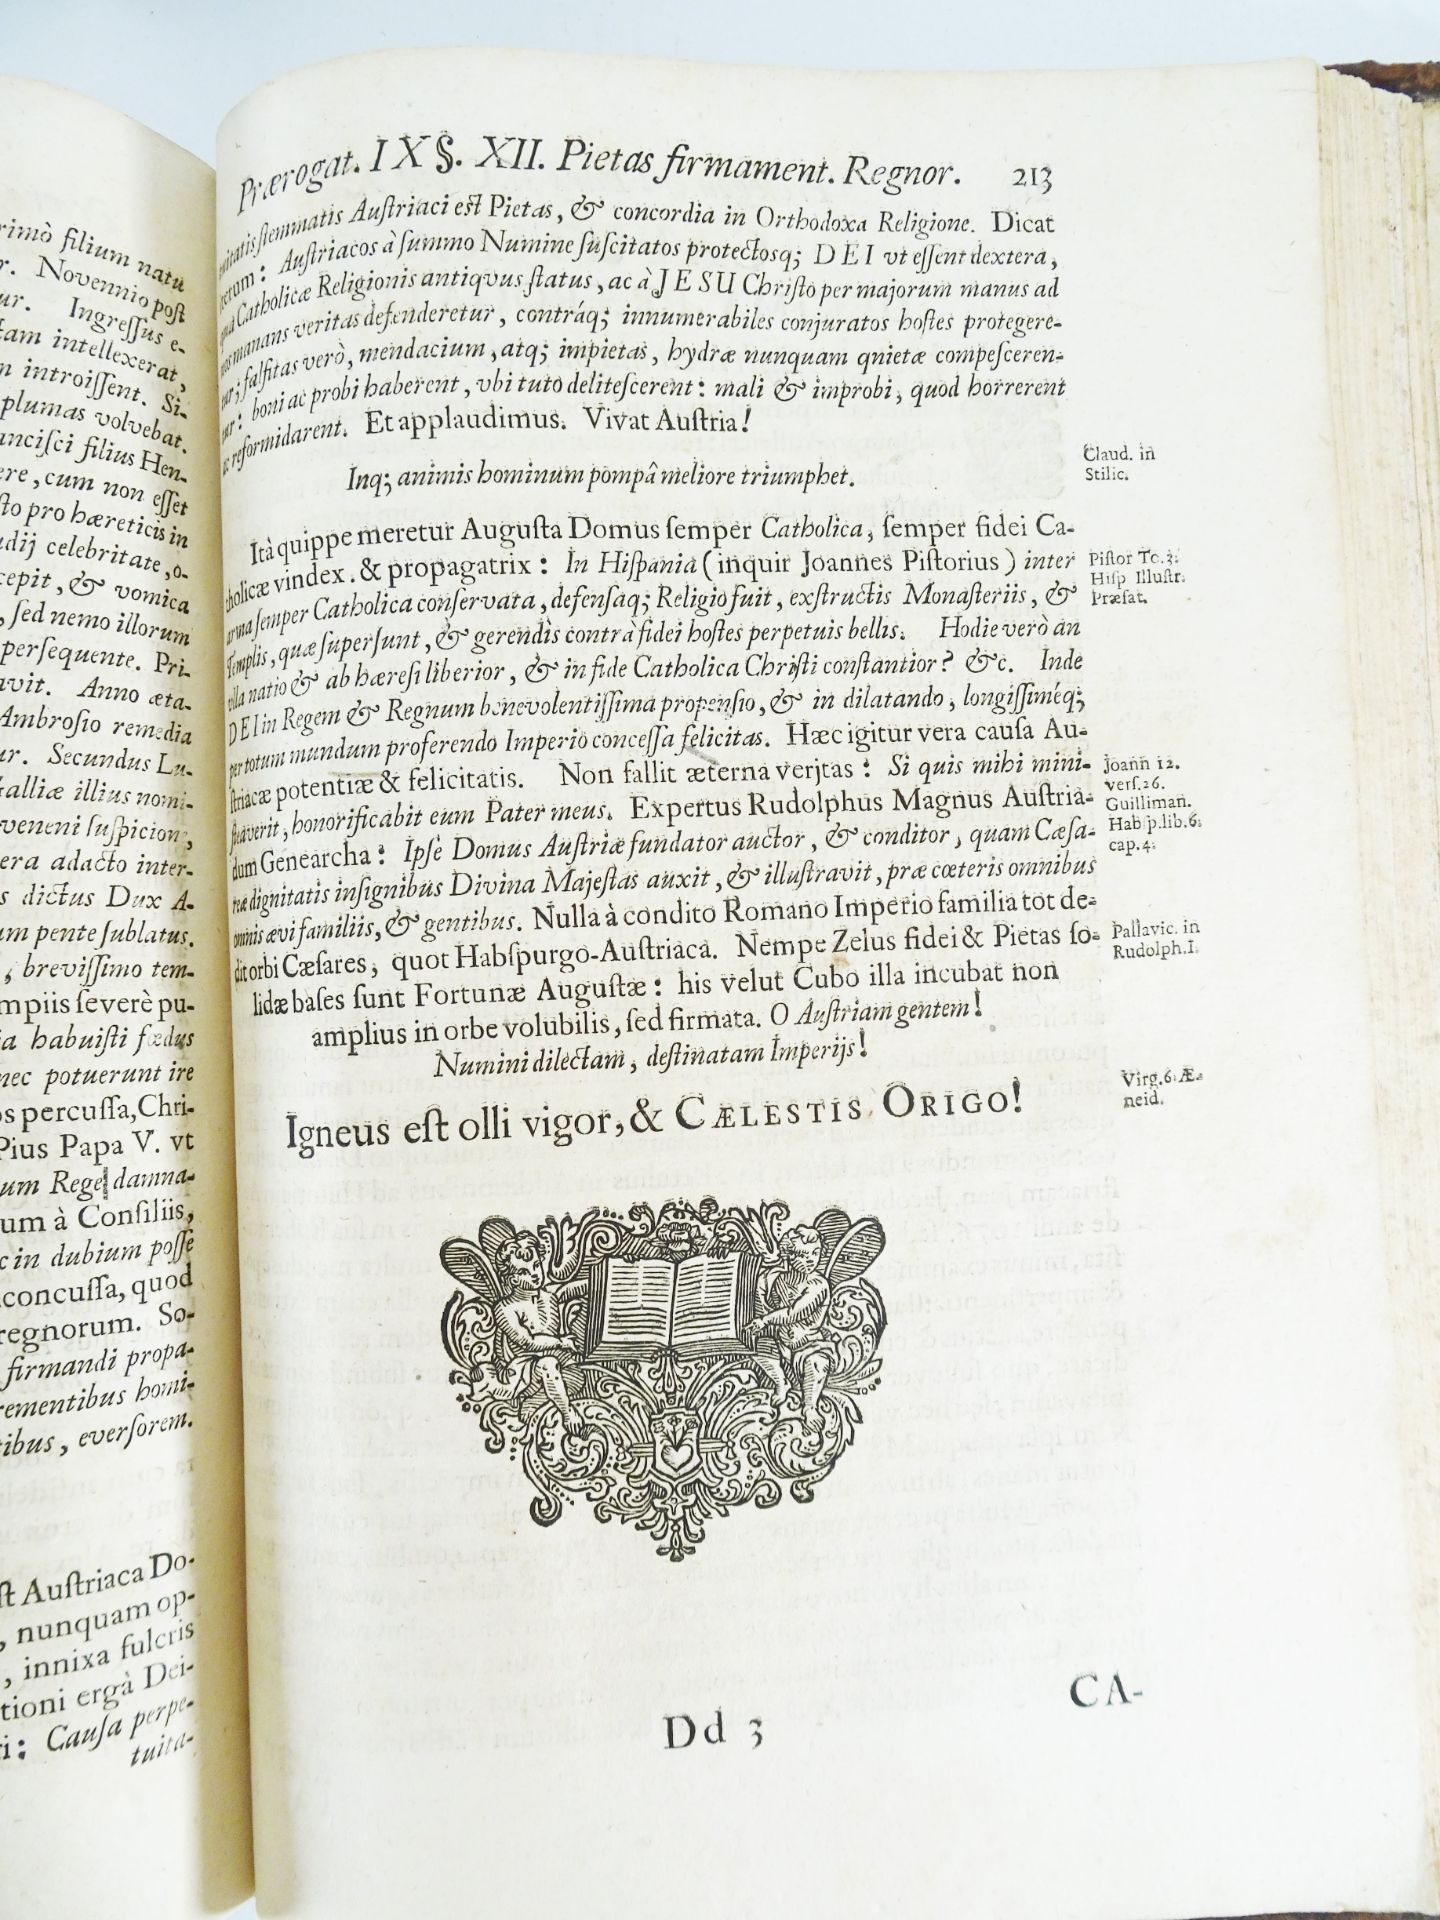 |History - Carolus Magnus| Schönleben Joannes Ludwig, "Dissertatio Polemica De Prima Origine Augusti - Image 13 of 16